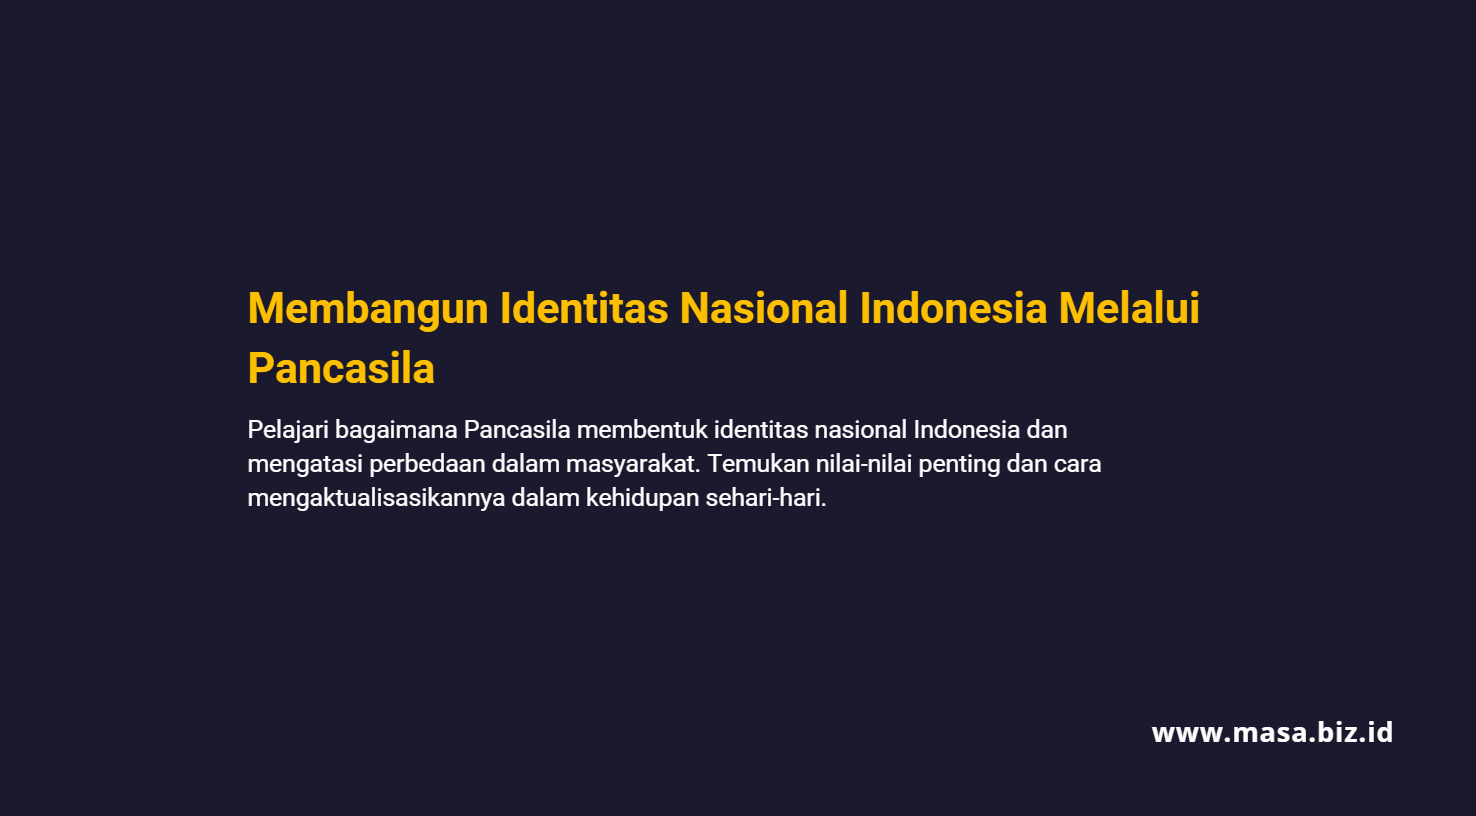 Membangun Identitas Nasional Indonesia Melalui Pancasila